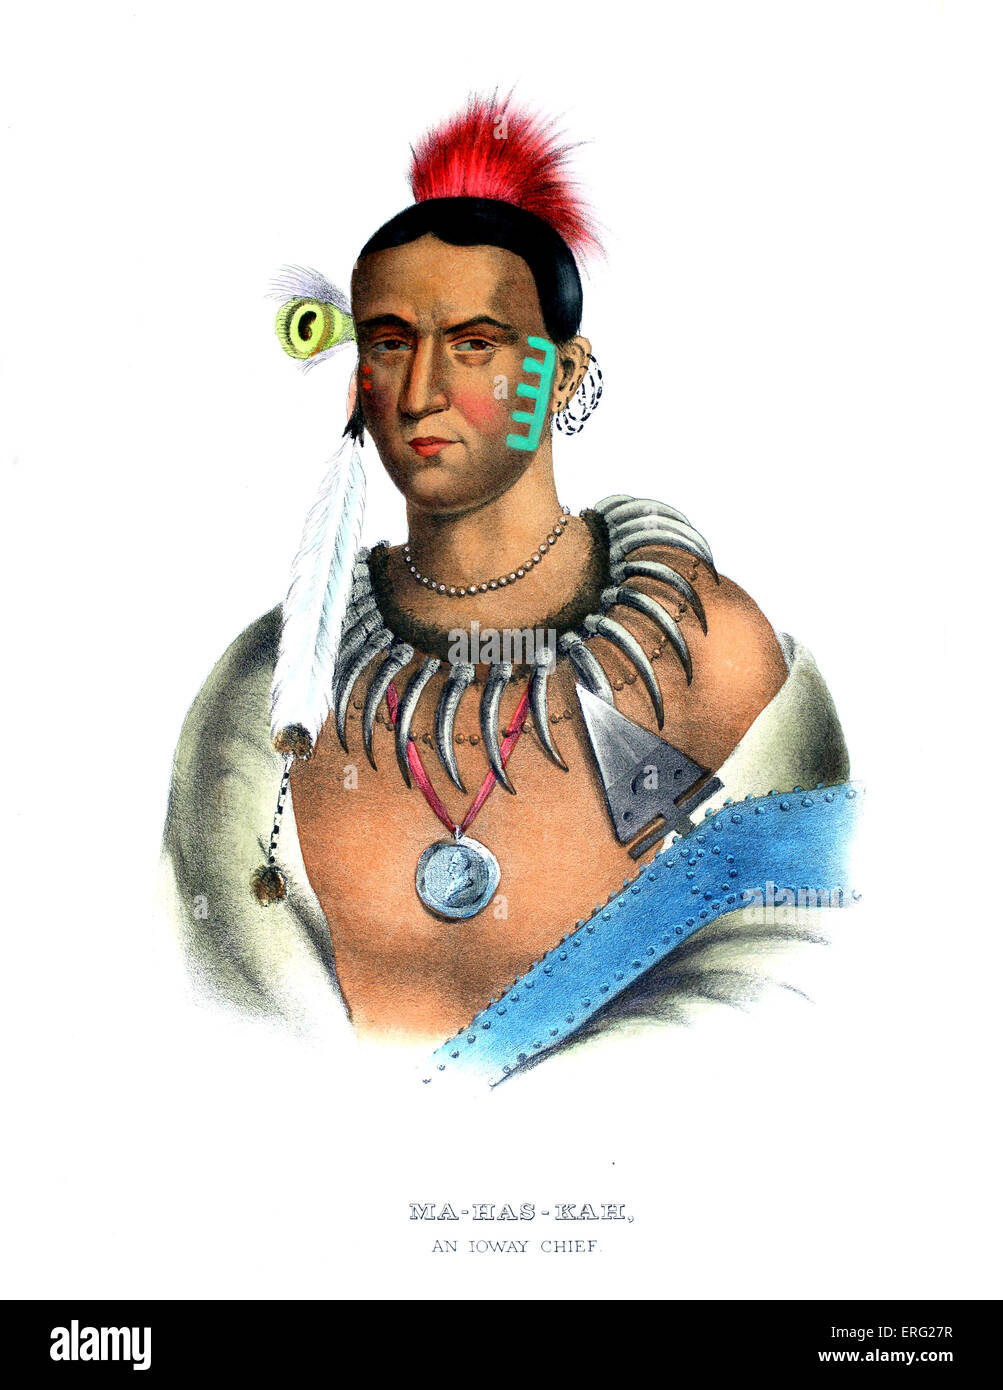 Mahaskah ("weiße Wolke"), ein Iowa-Chef. Indianerhäuptling aus dem Iowa-Stamm, der Einfluss nach der Tötung zahlreicher gewonnen Stockfoto